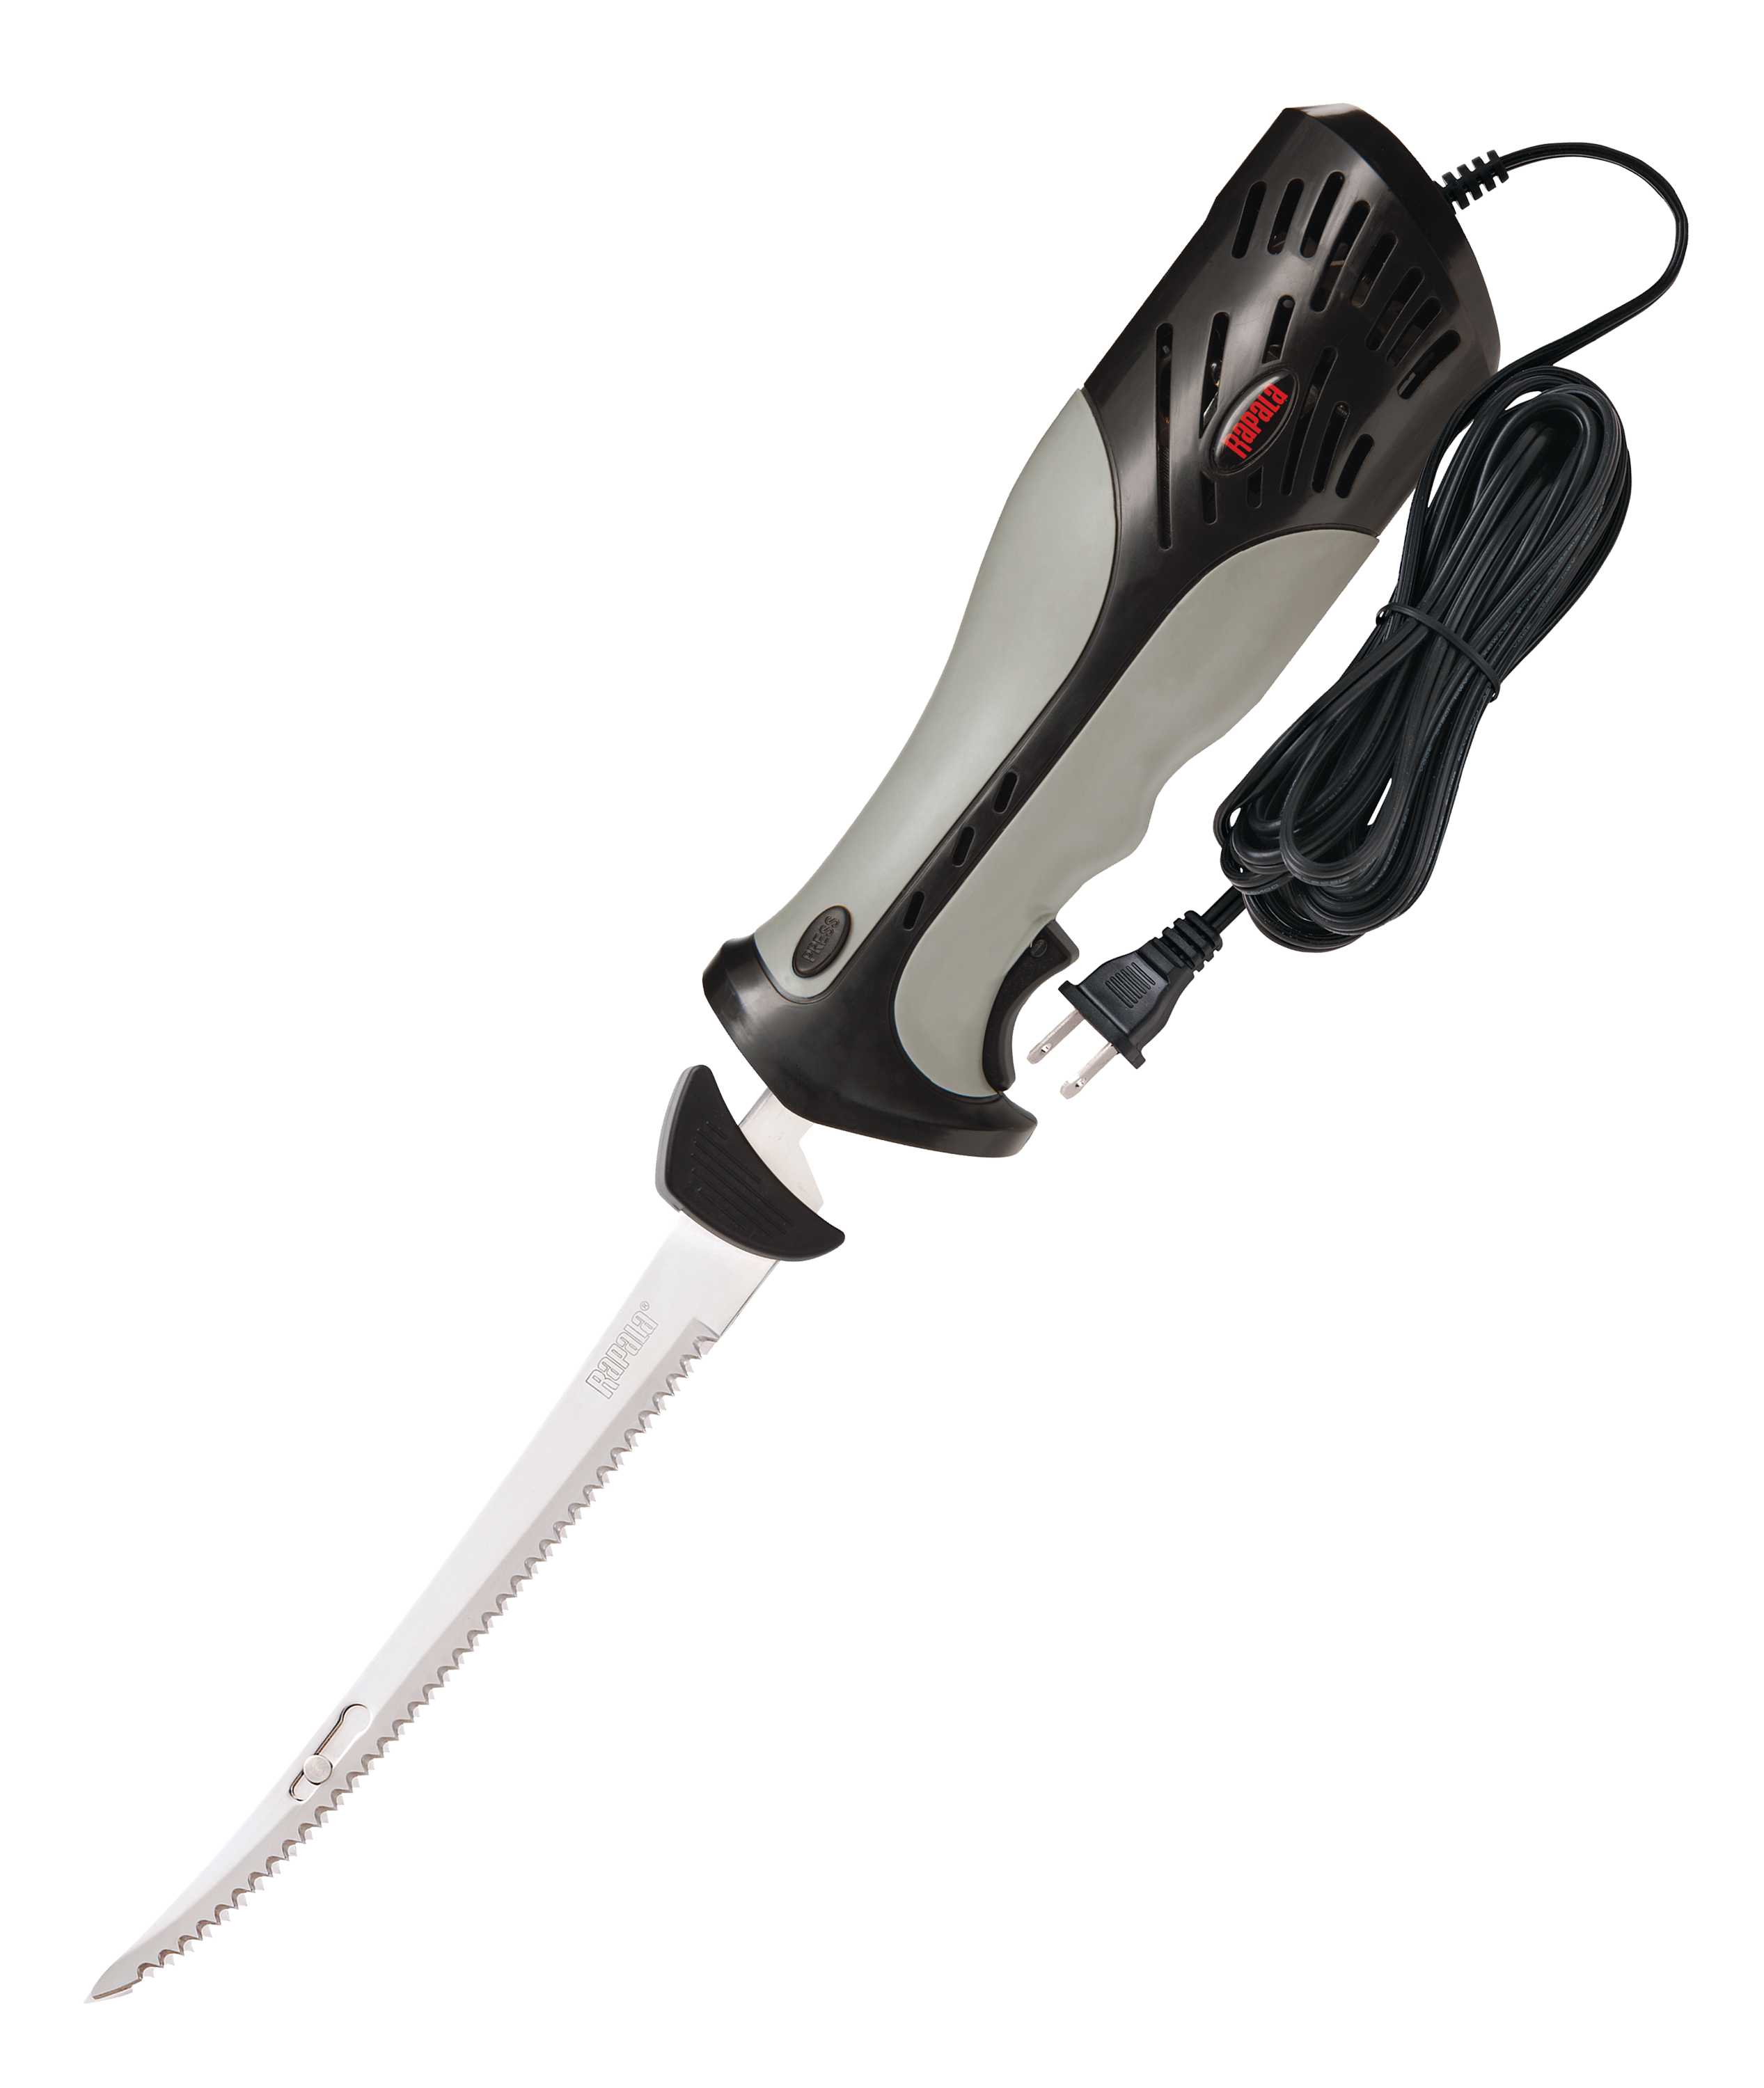 Bubba 110V Electric Fillet Knife